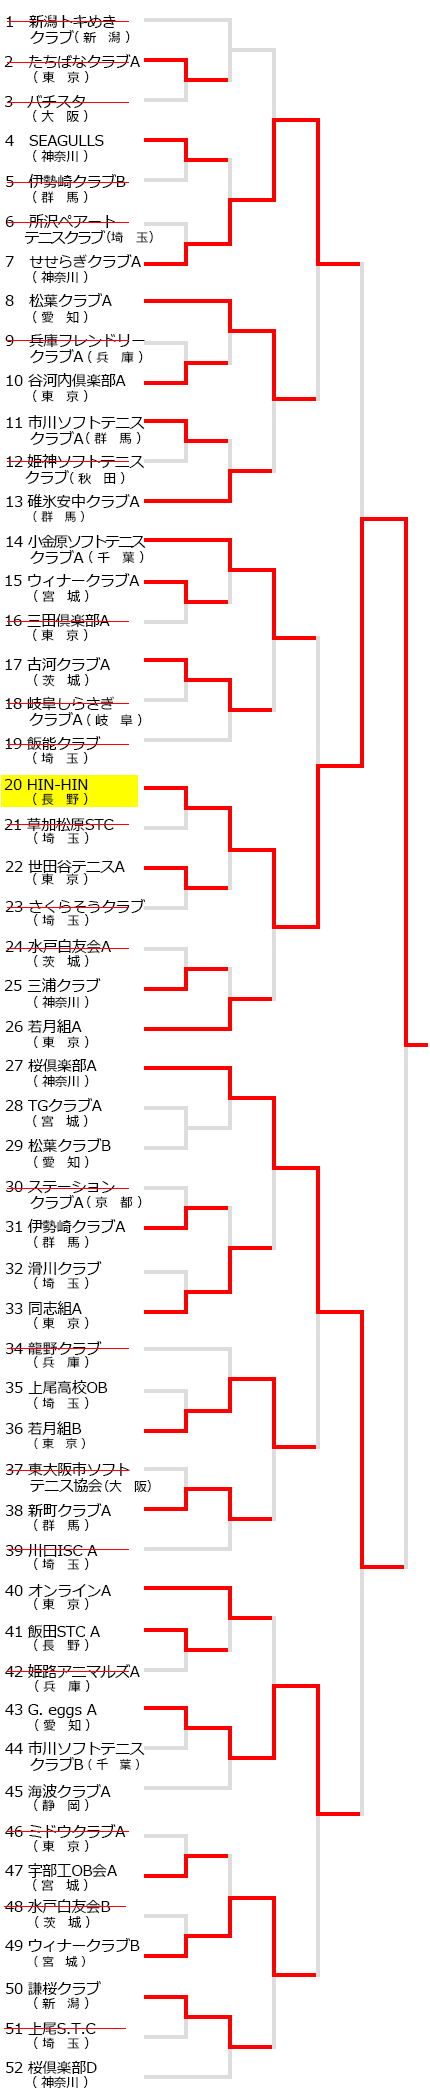 全日本クラブソフトテニス選手権,試合結果,大会結果,2017年,平成29年